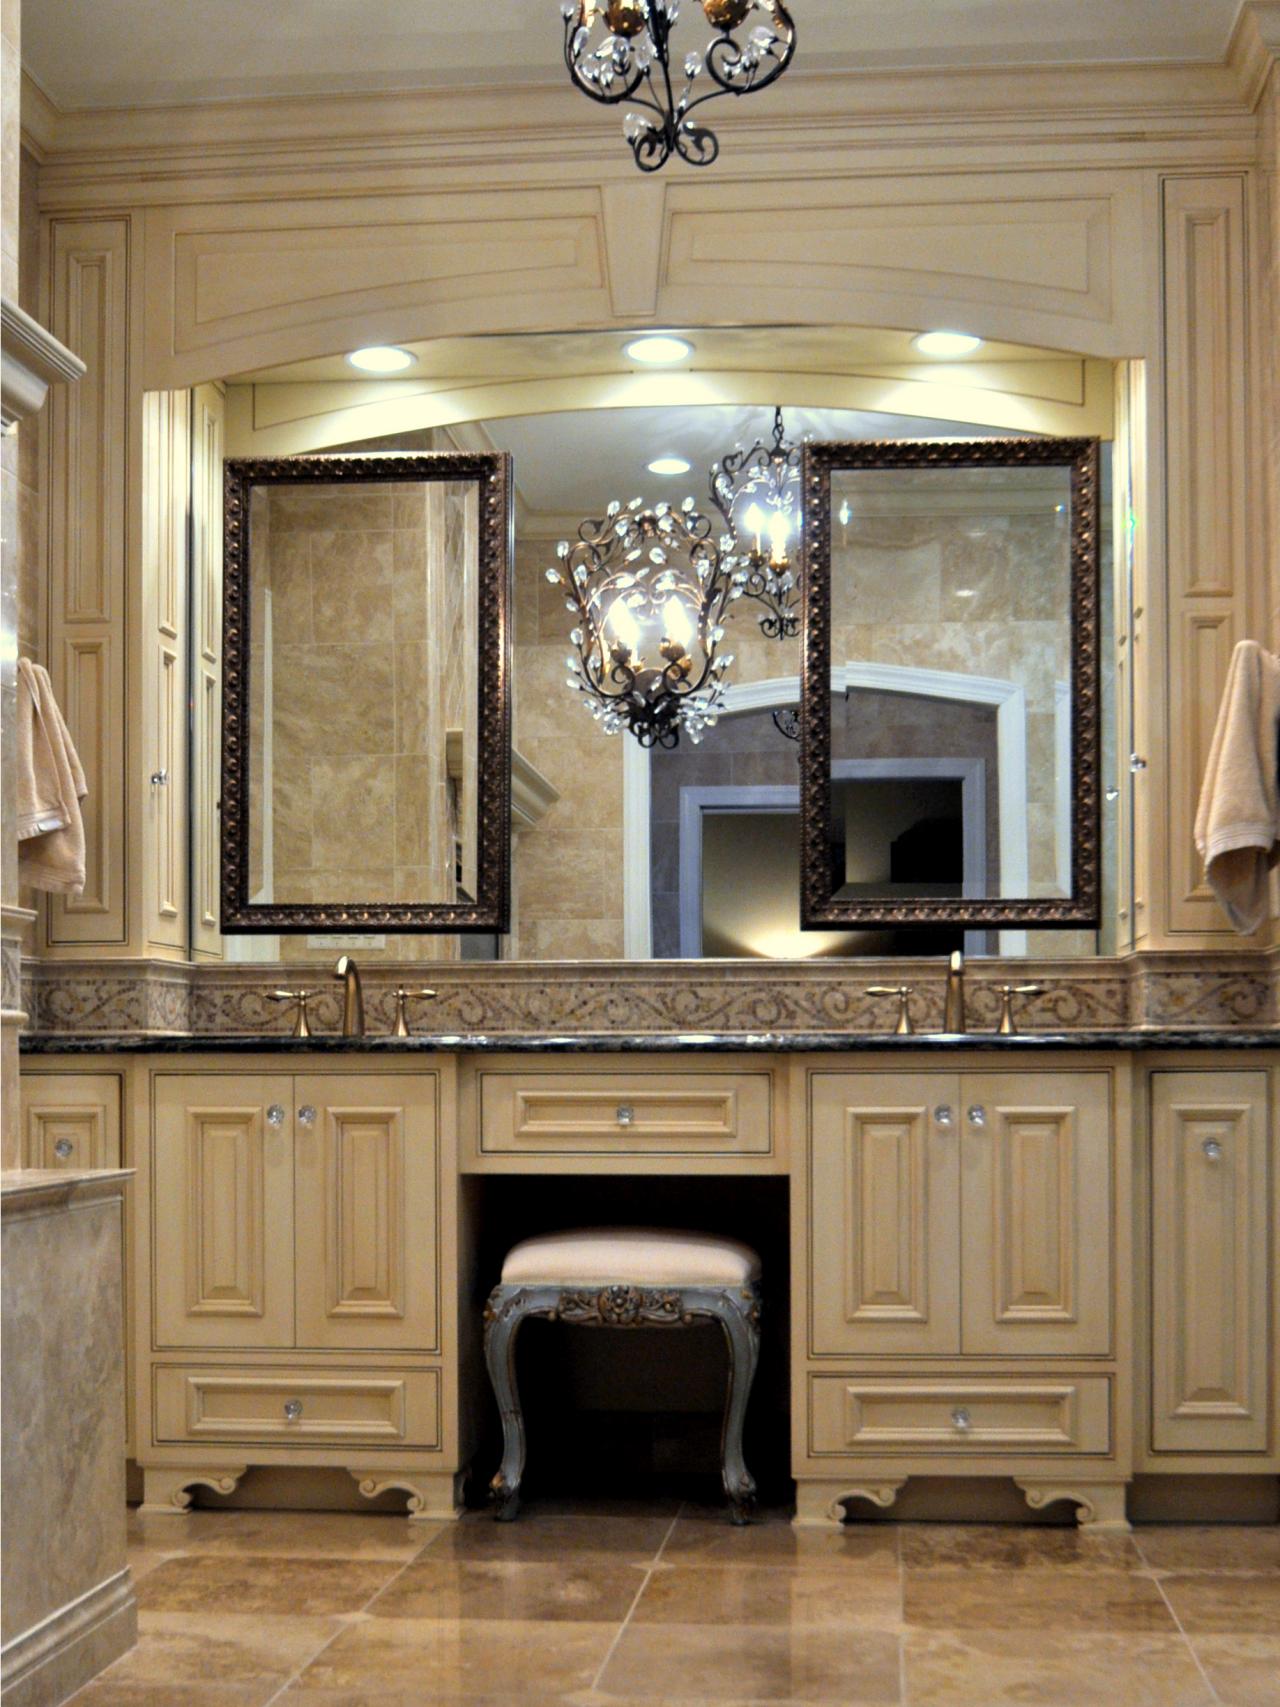 Choosing a Bathroom Vanity | HGTV